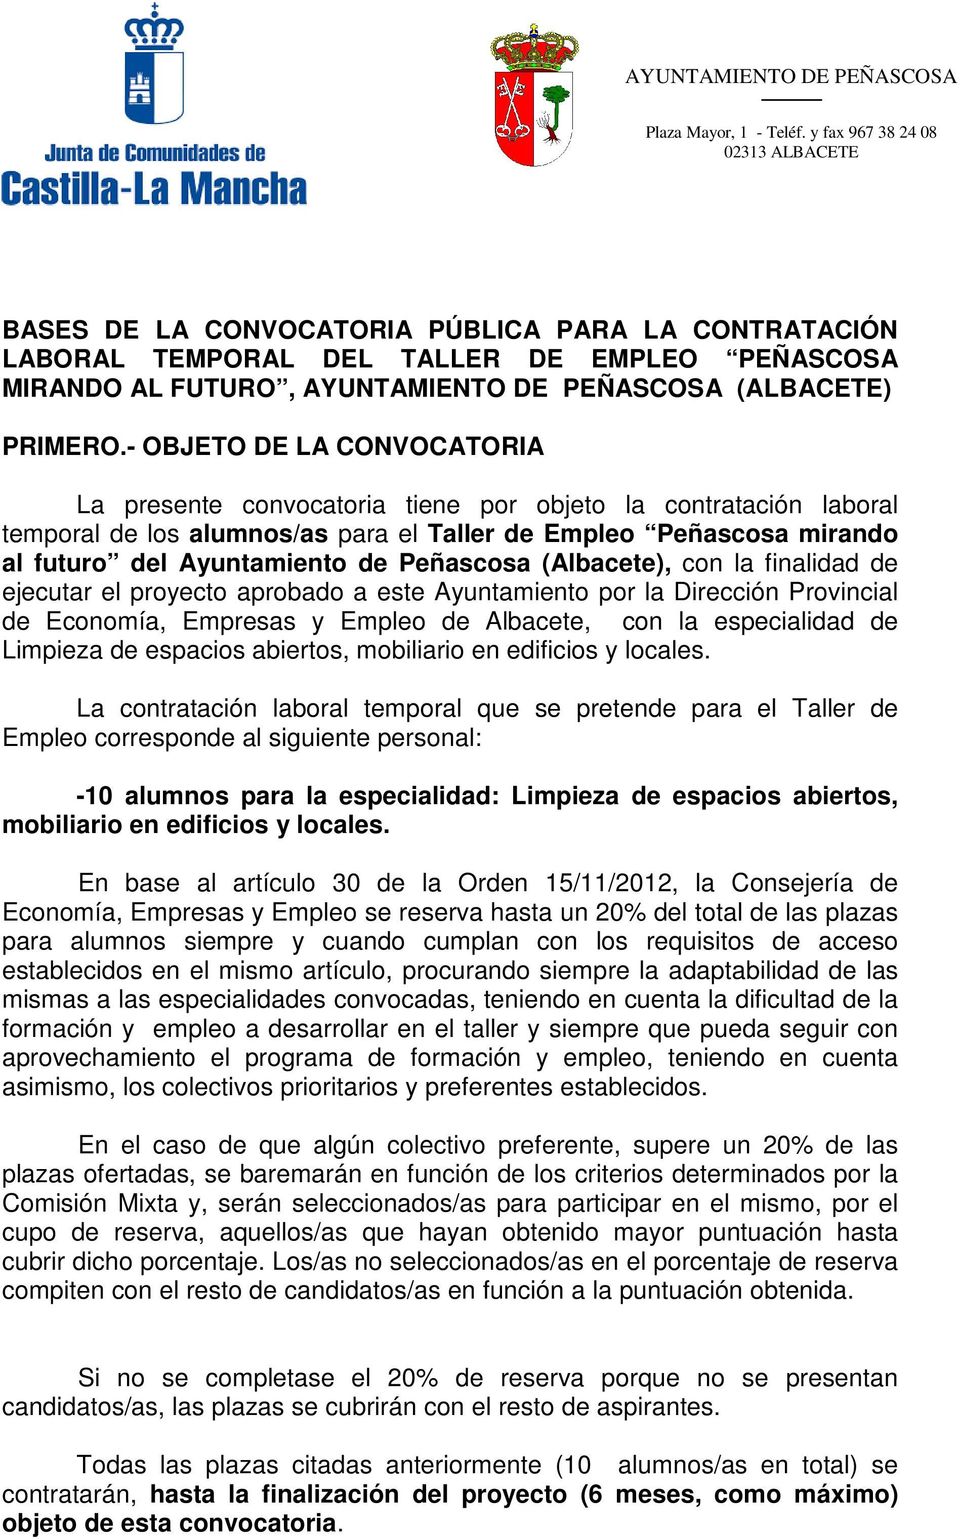 Peñascosa (Albacete), con la finalidad de ejecutar el proyecto aprobado a este Ayuntamiento por la Dirección Provincial de Economía, Empresas y Empleo de Albacete, con la especialidad de Limpieza de